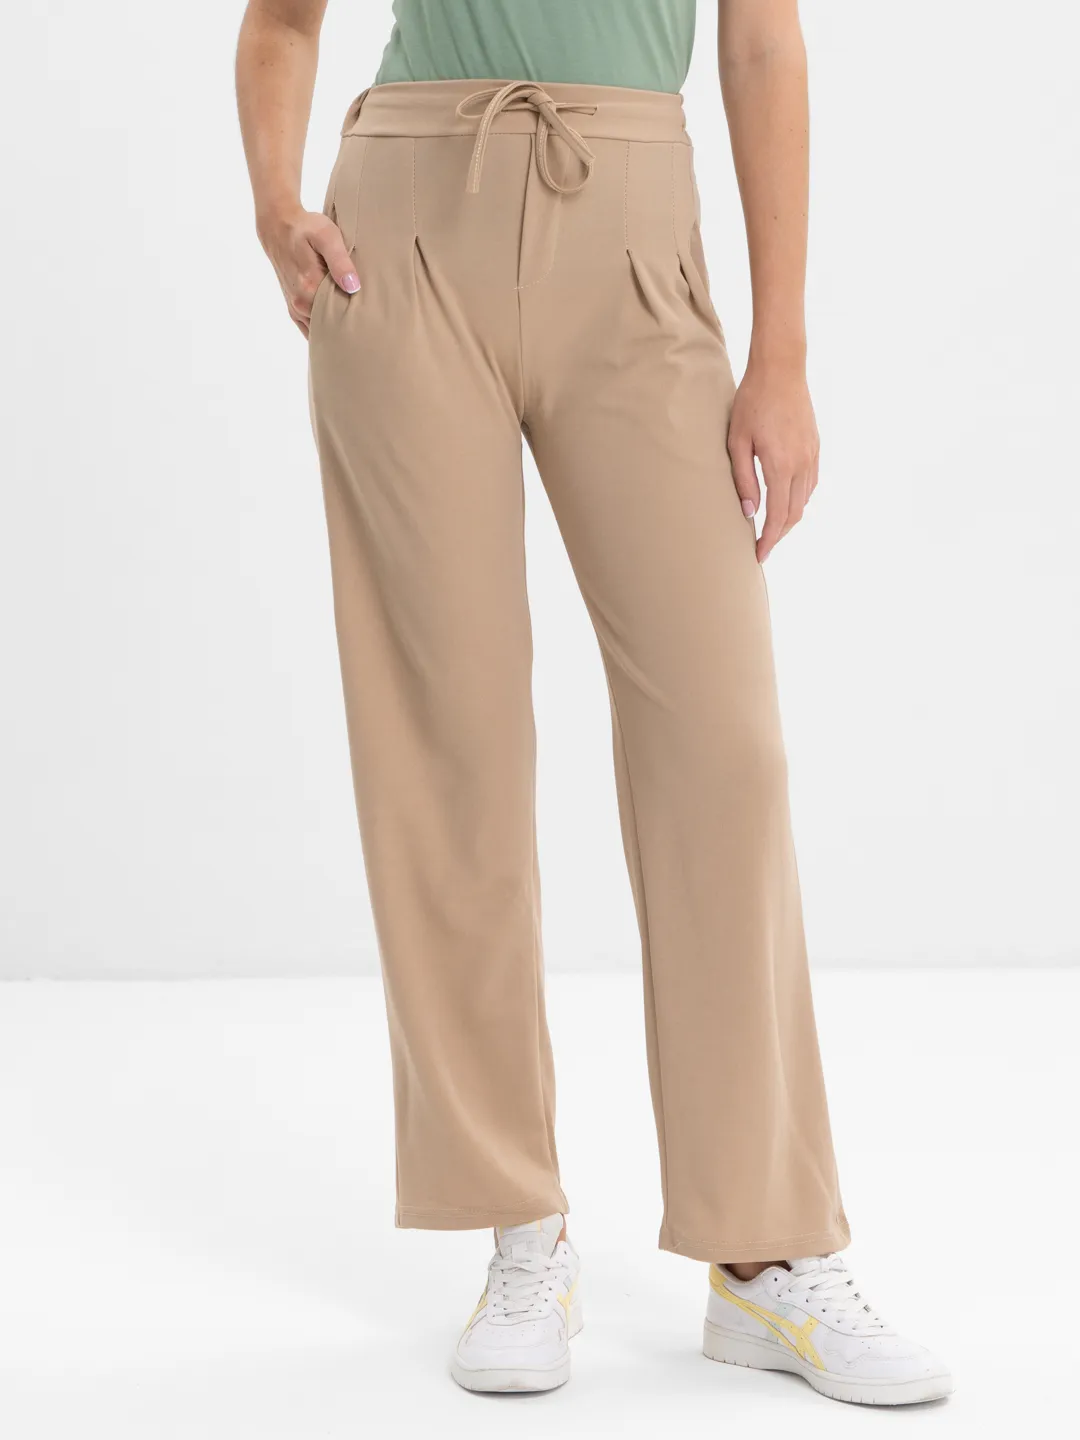 Женские брюки-палаццо классические, клеш, широкие, школьные брюки купить поцене 616.55 ₽ в интернет-магазине KazanExpress